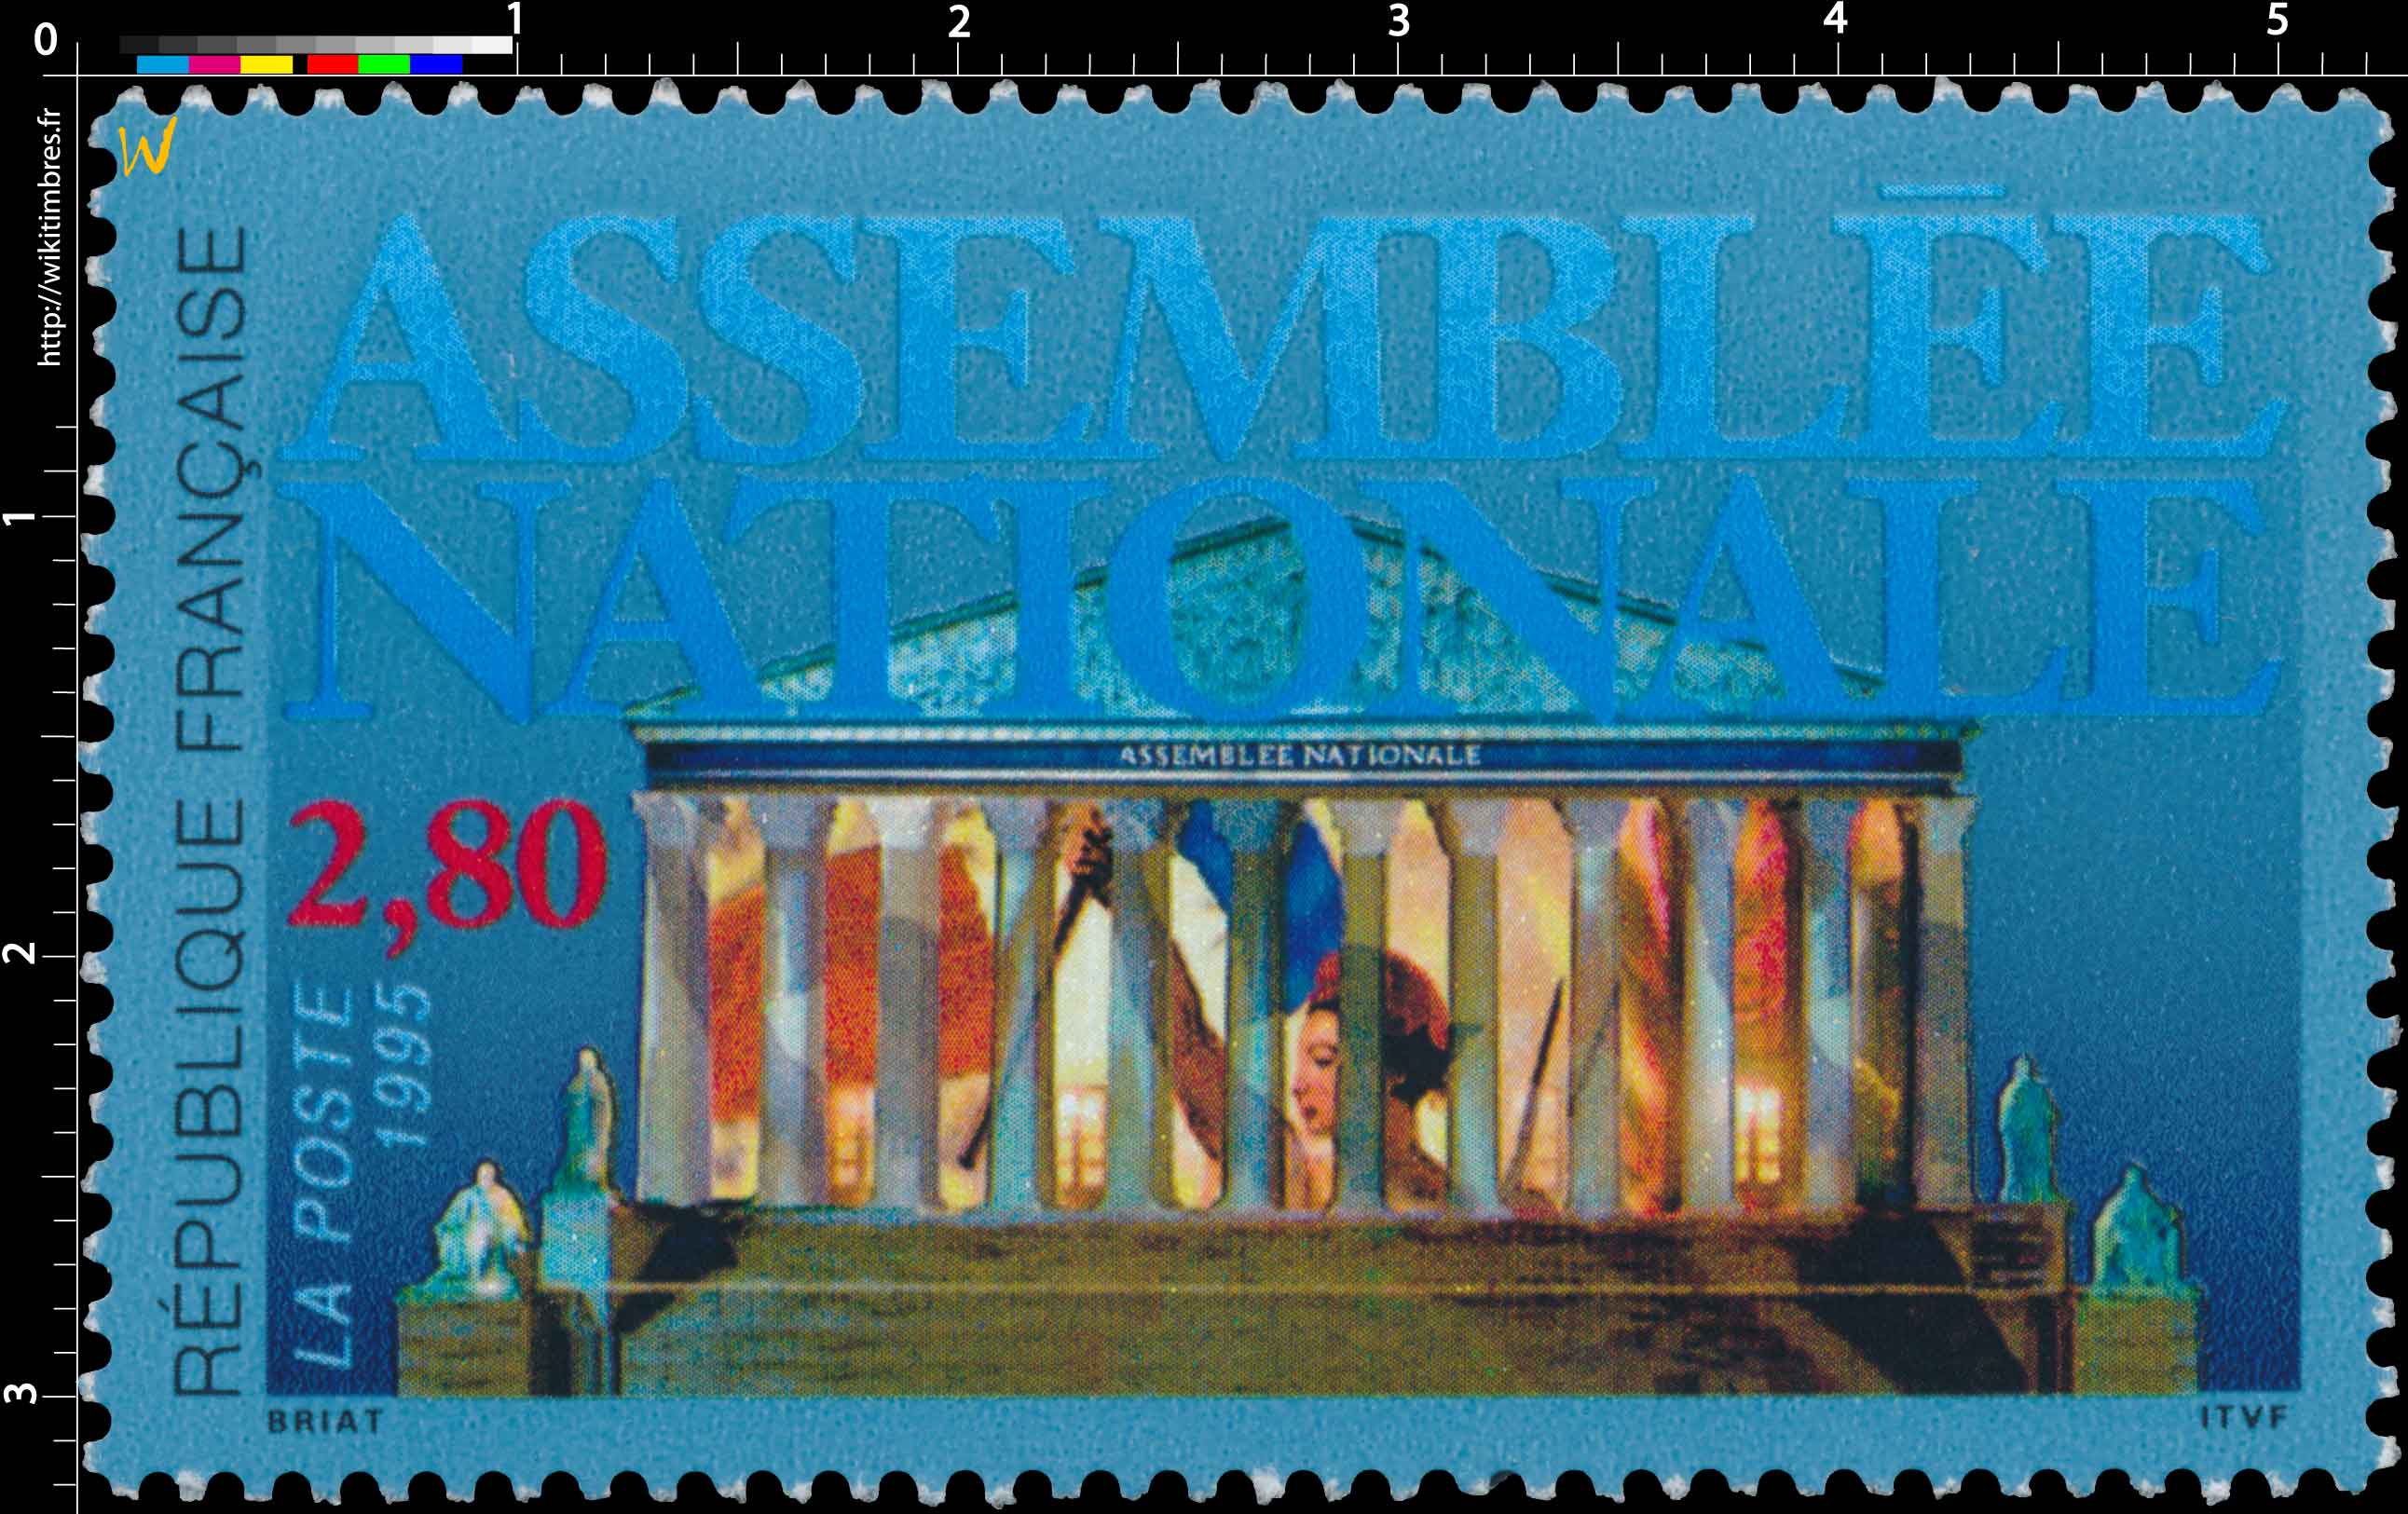 1995 ASSEMBLÉE NATIONALE